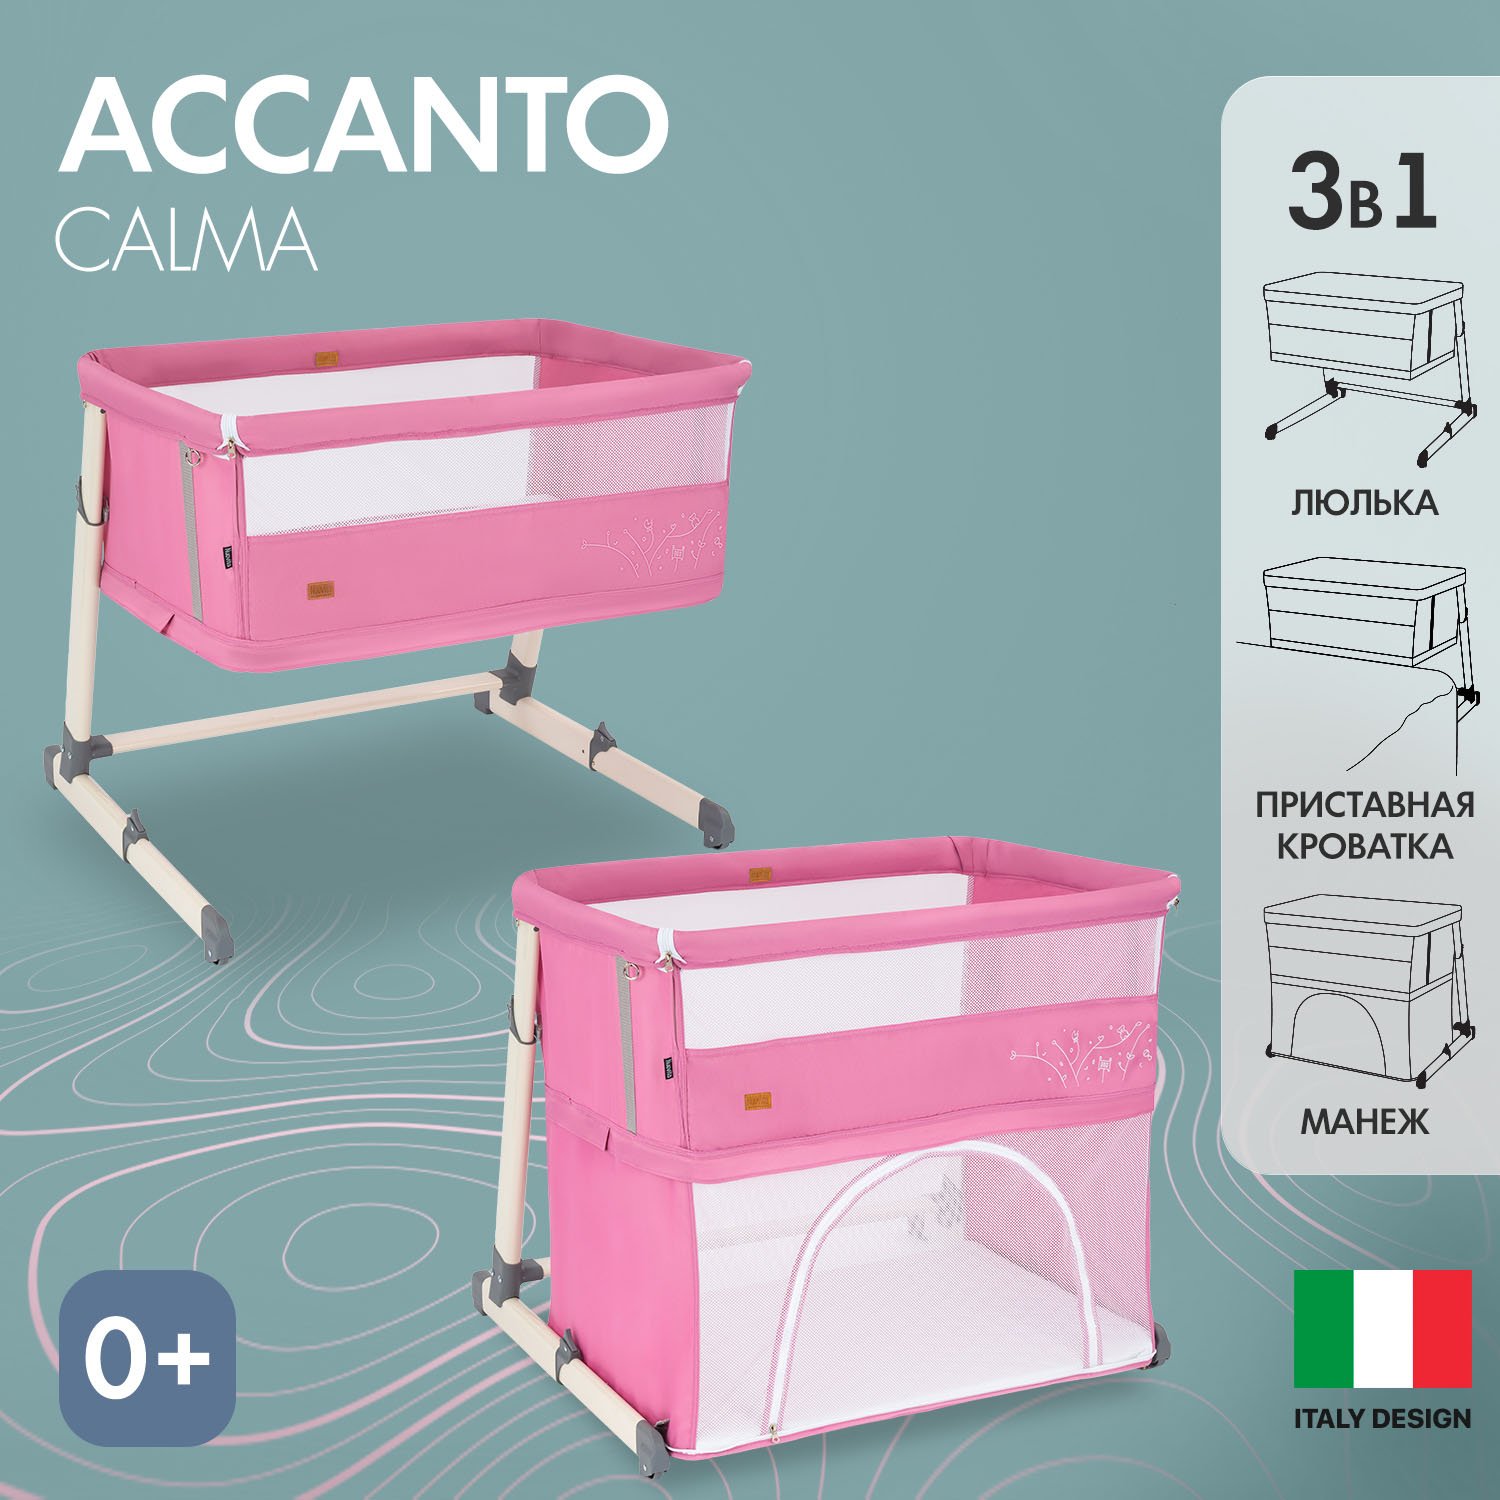 Детская приставная кроватка Nuovita Accanto Calma (Rosa/Розовый) коляска reindeer prestige wiklina люлька на раме с конвертом белый розовый w 3